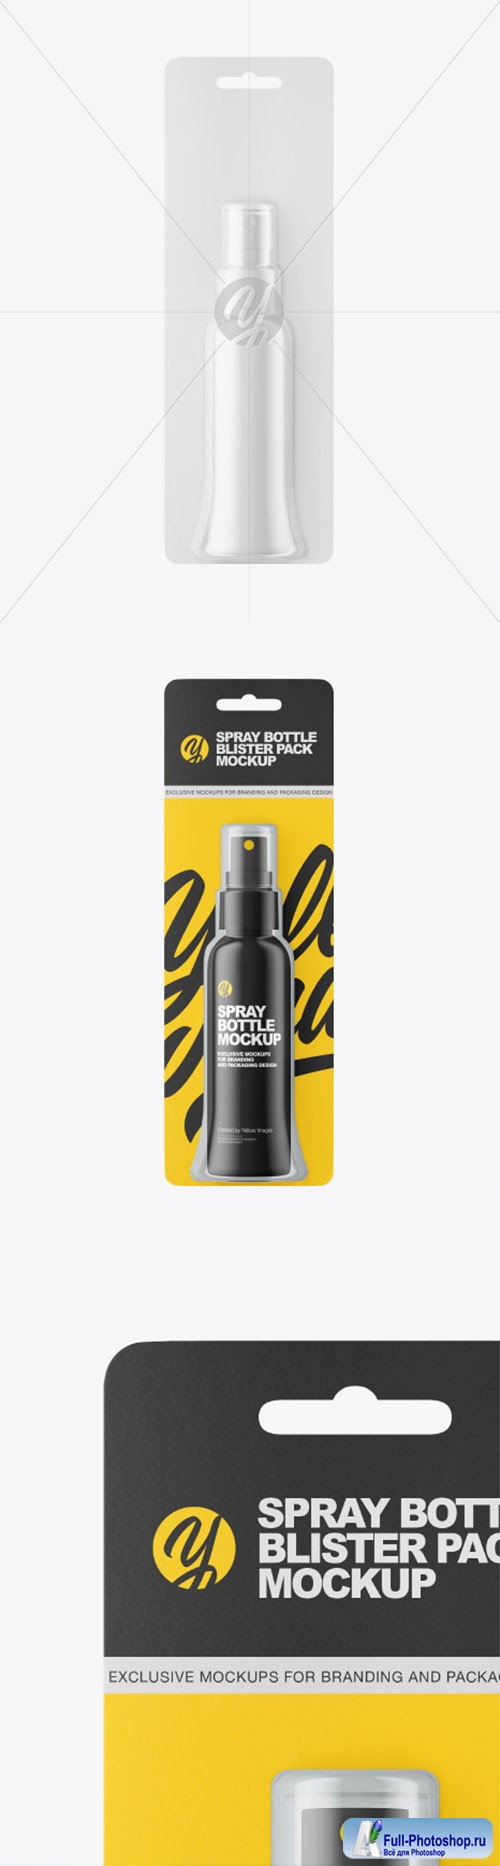  Spray Bottle Blister Pack Mockup 86553